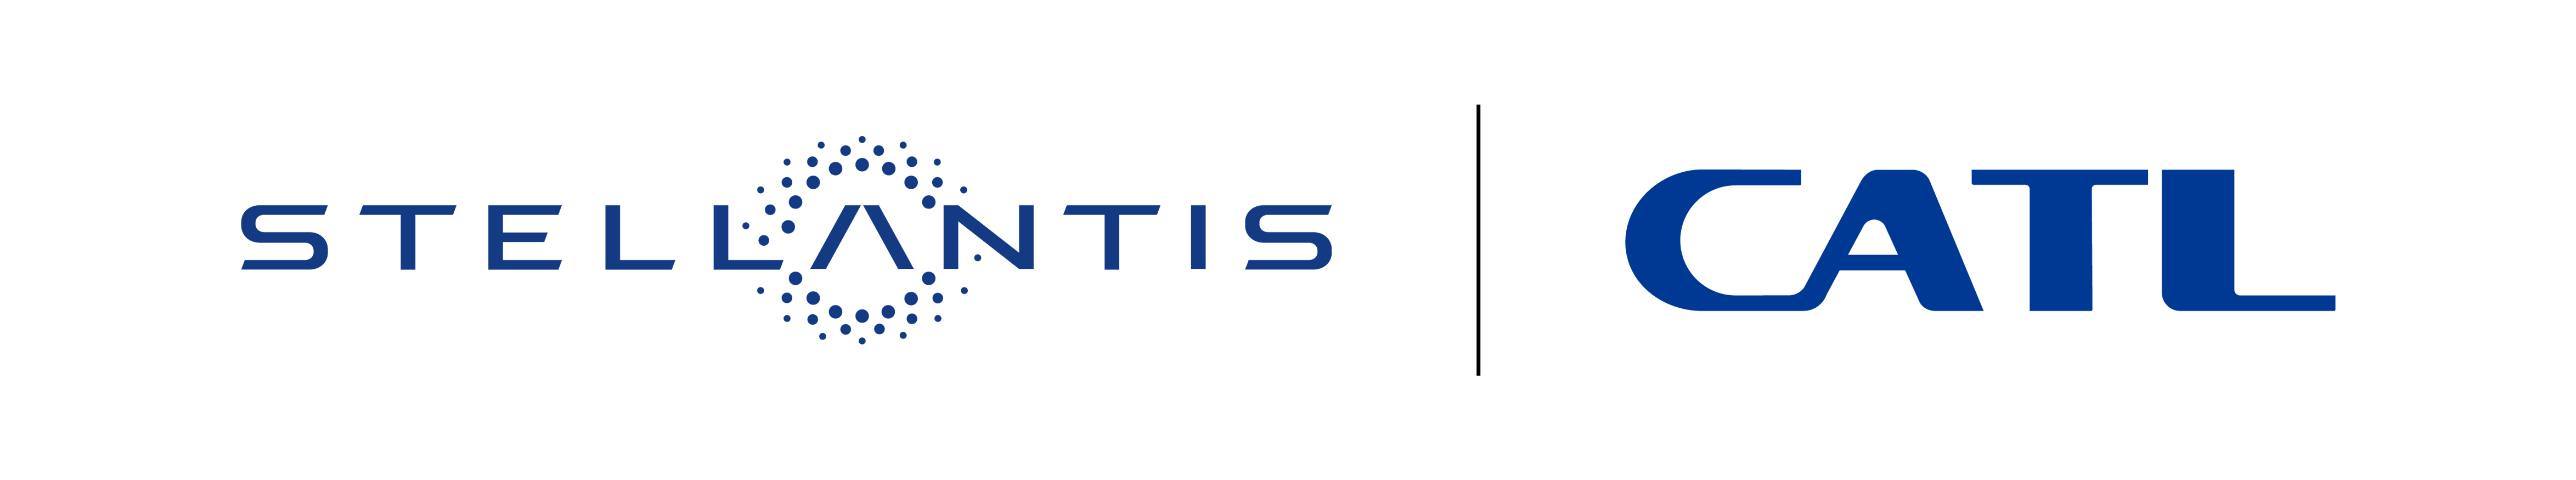 Image de Stellantis et CATL logo